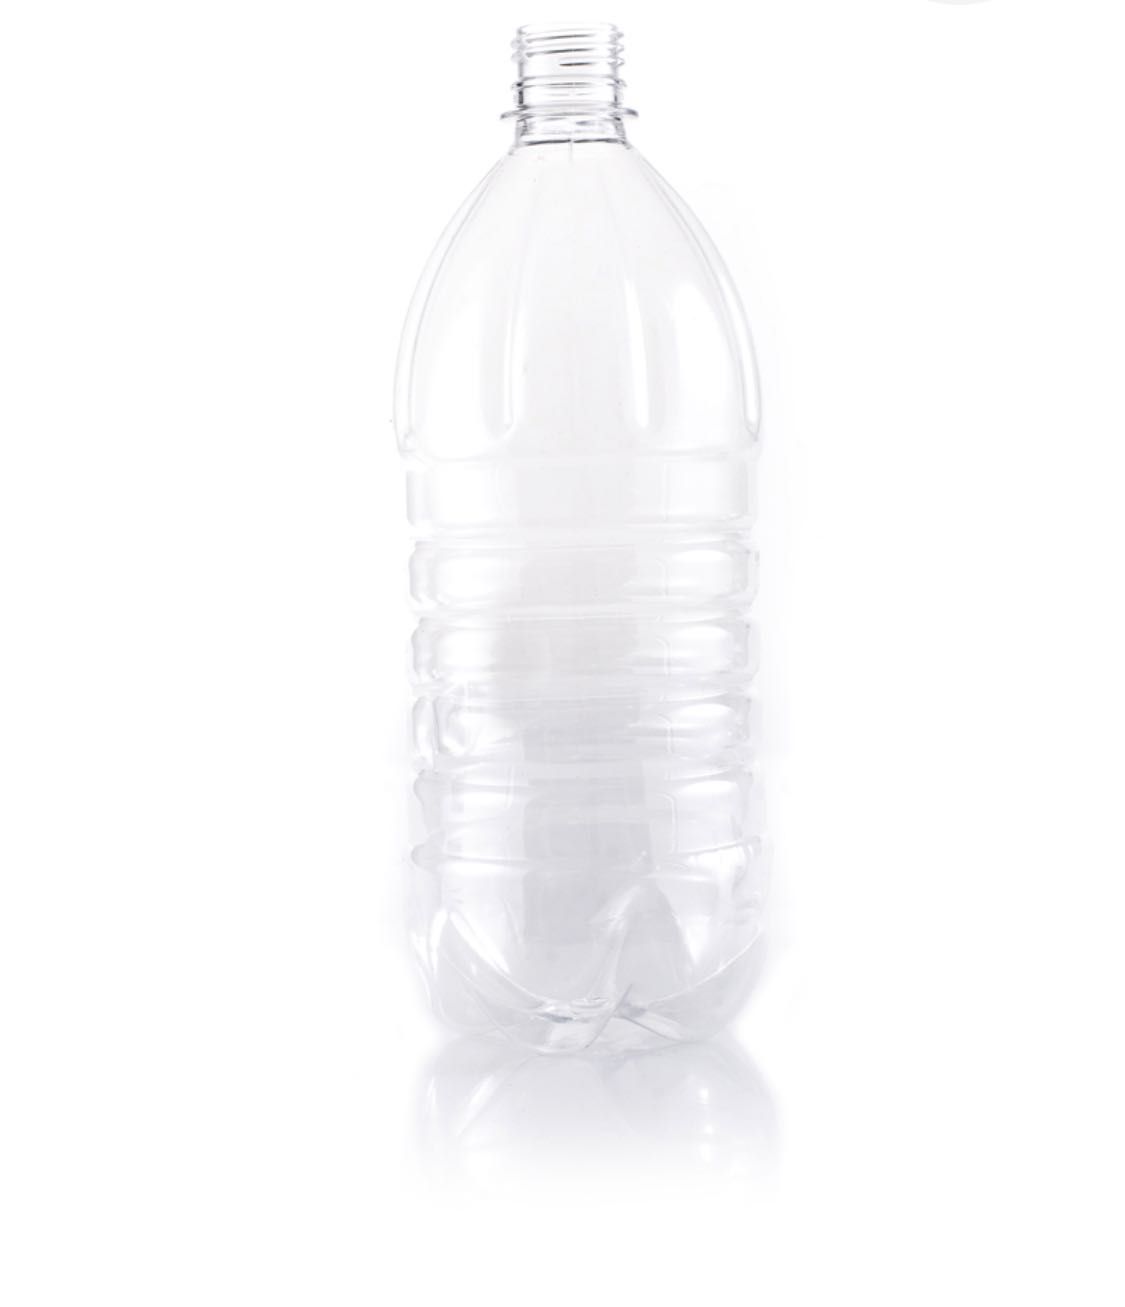 Пэт тара(бутылка) от 50 мл до 10 литров все объёмы.Бутылка с 38 горлом